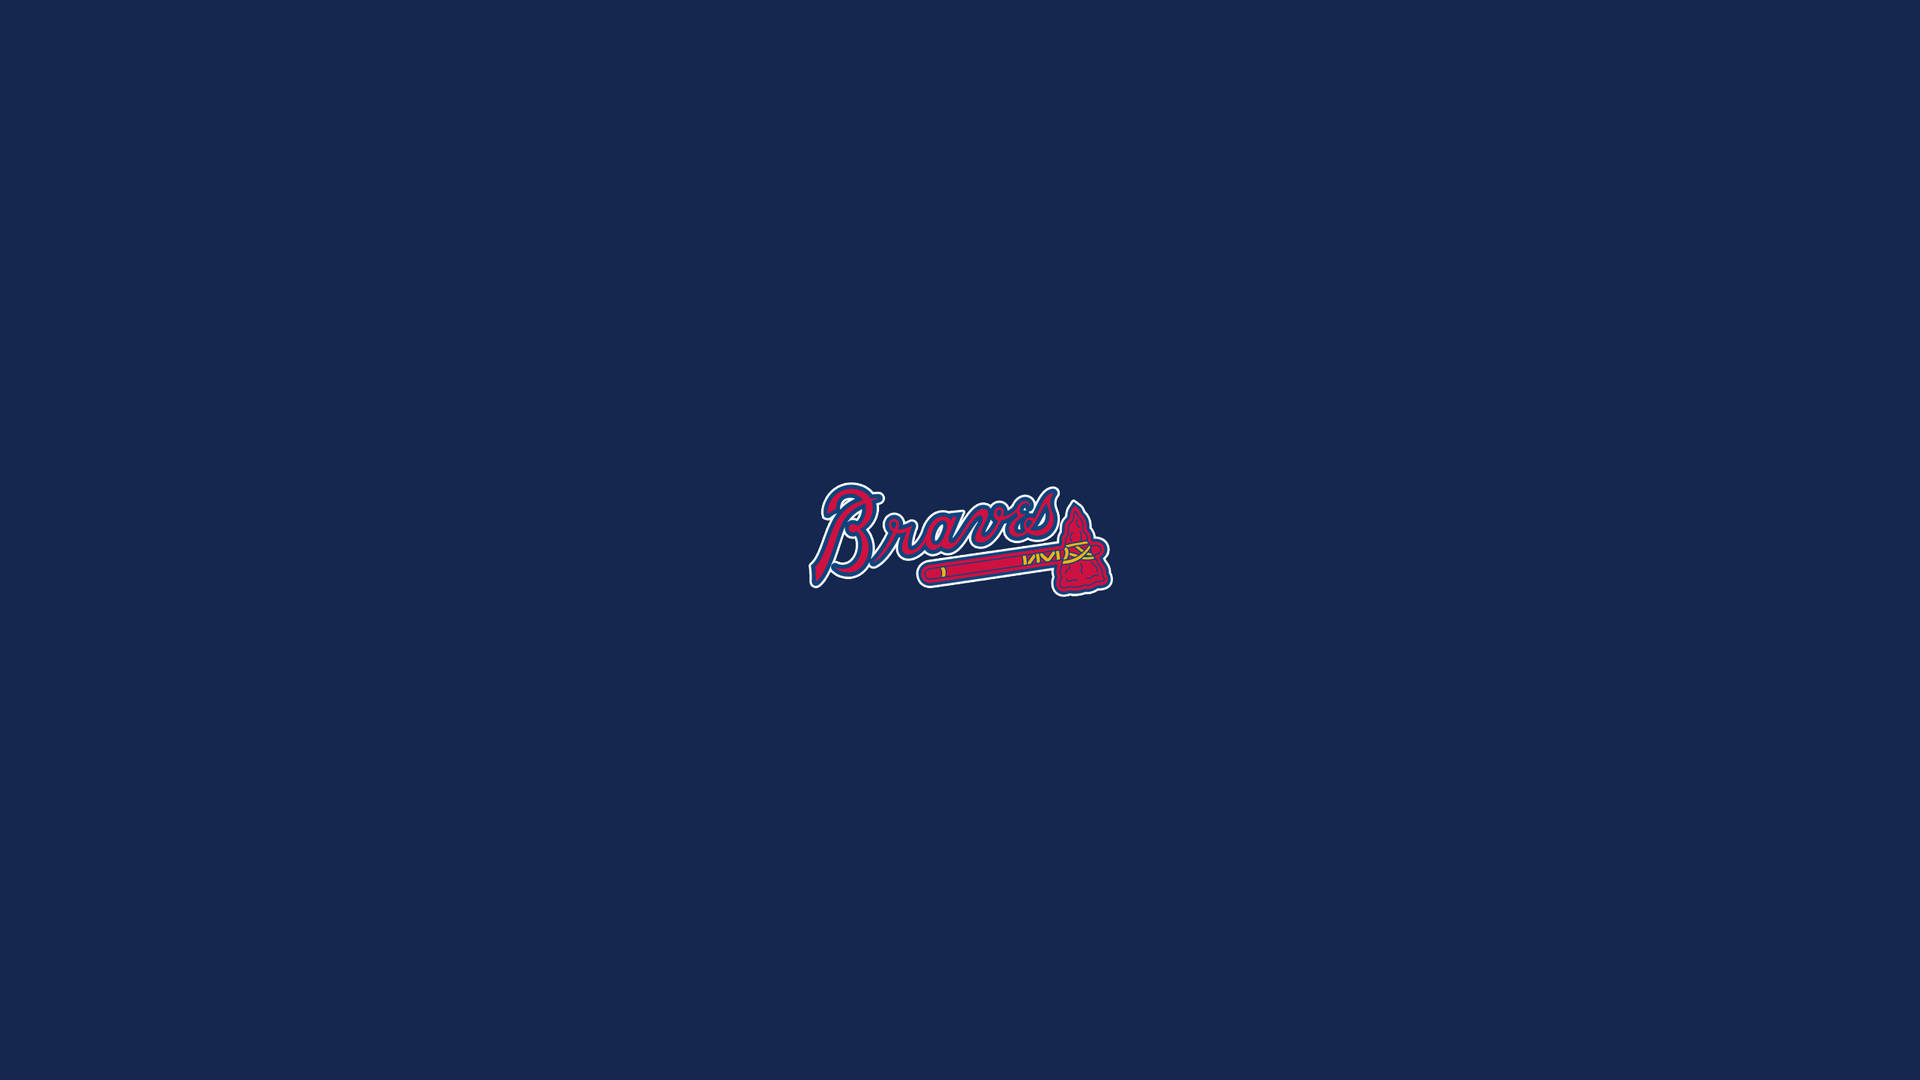 Atlanta Braves Emblem